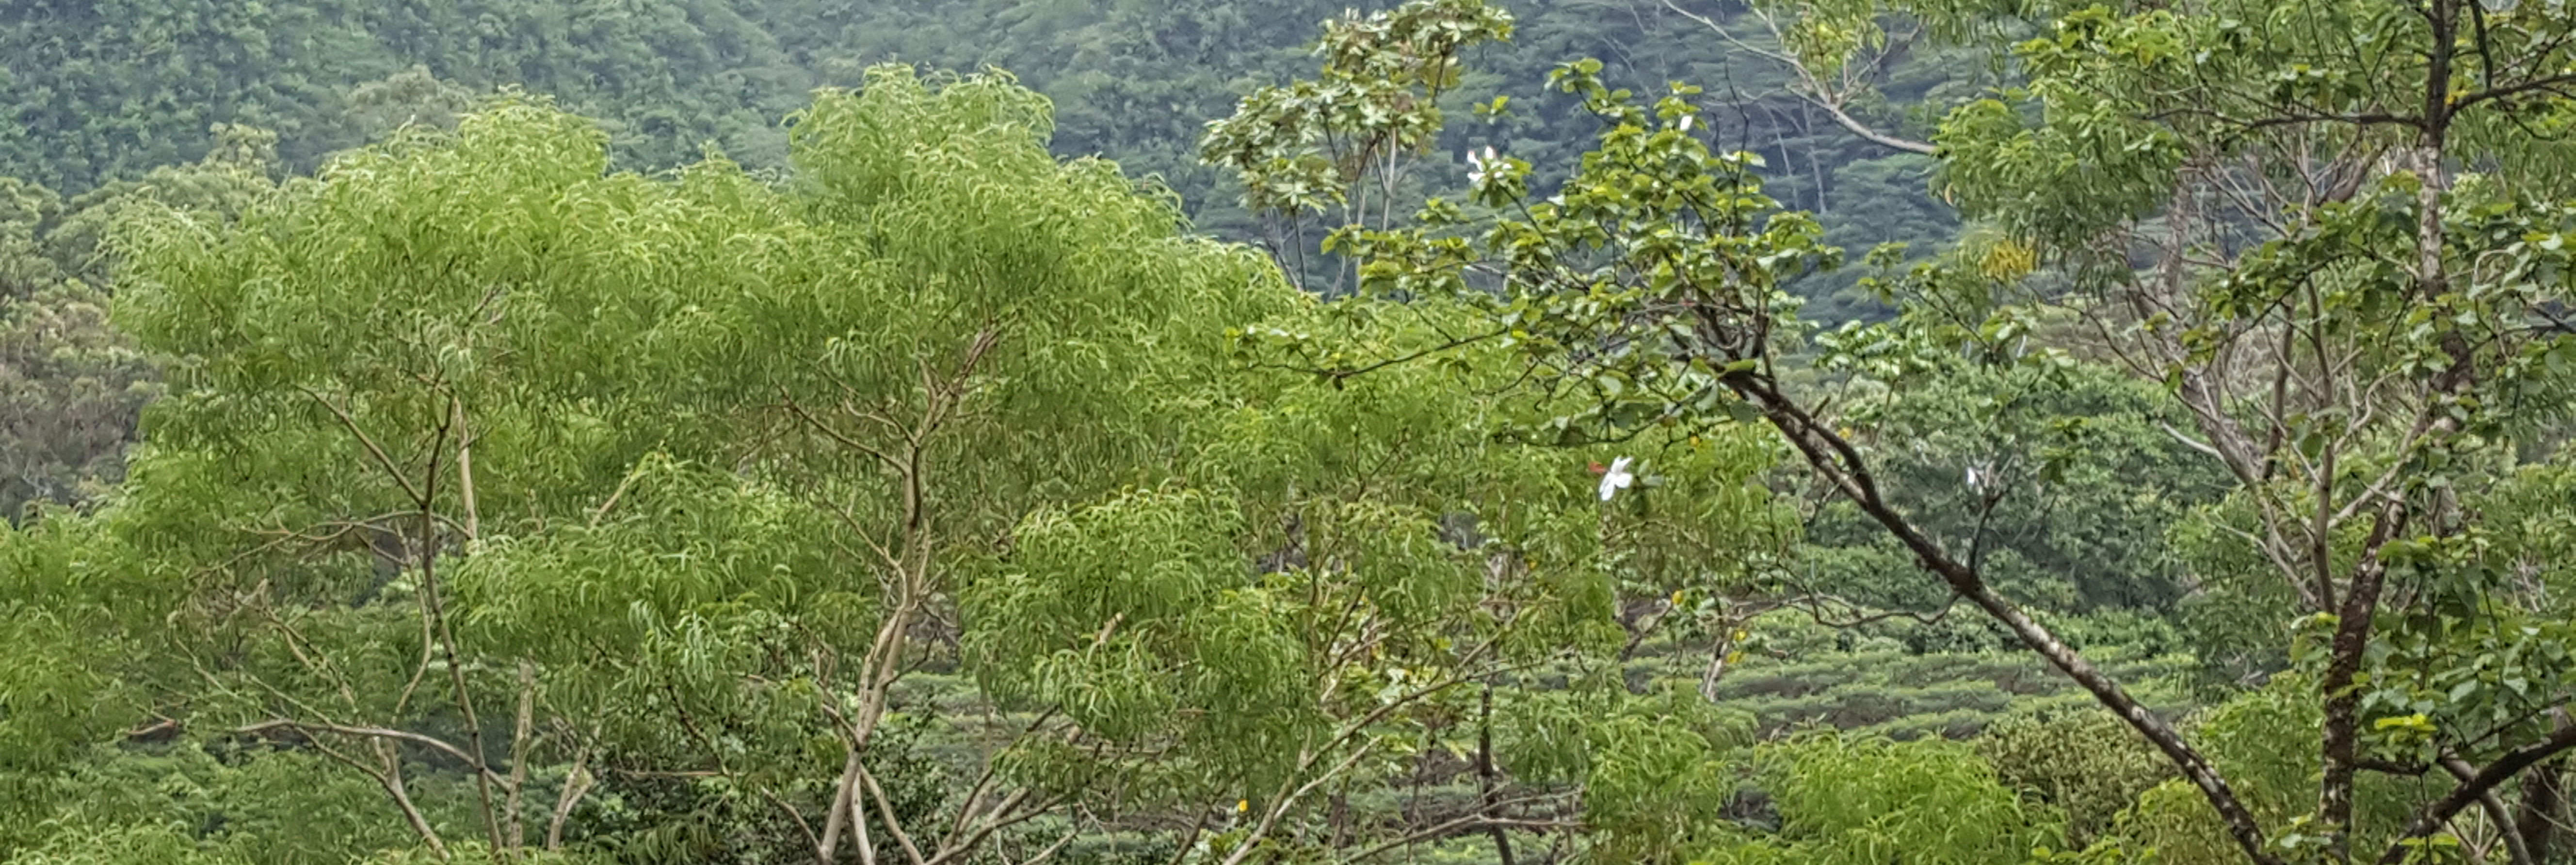 Koa trees